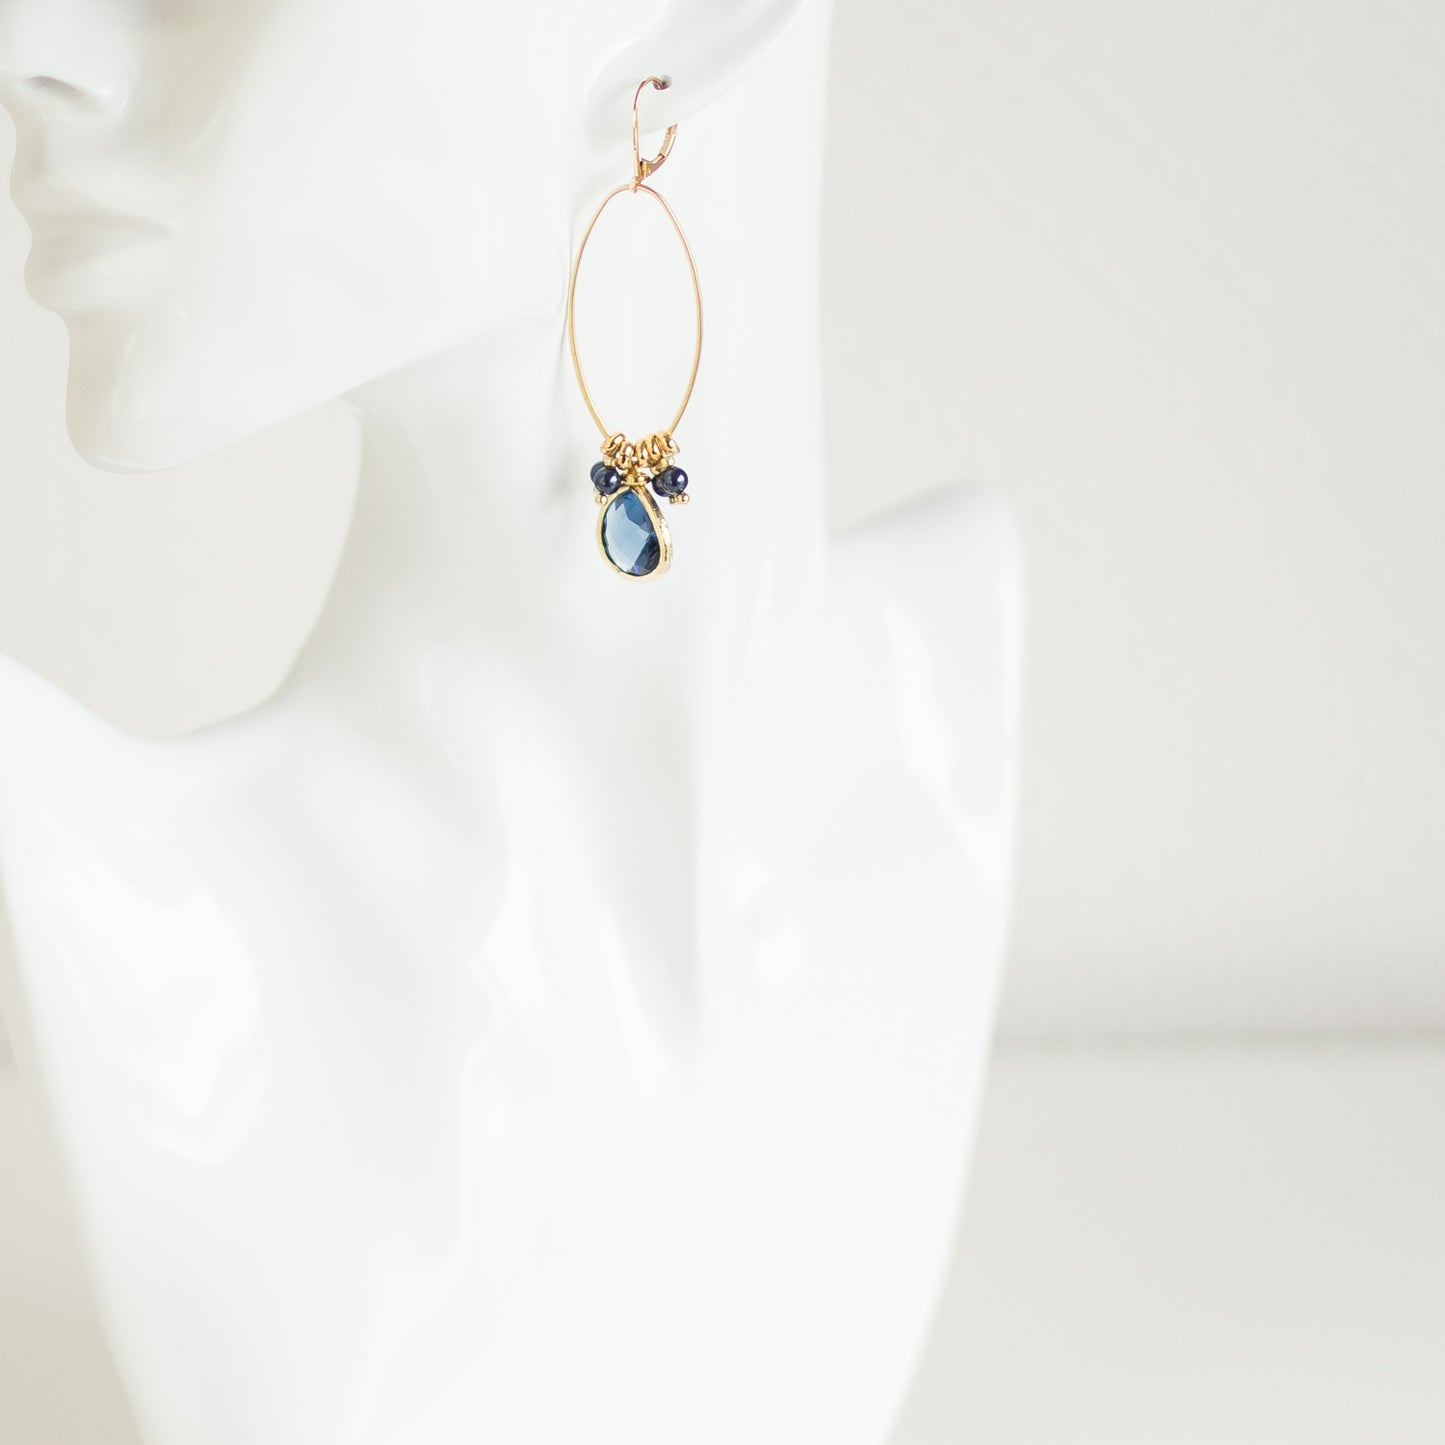 Buy online handmade Blue Gold earrings. Dangle Drop Earrings. Gold earrings. Blue earrings. Long earrings. Crystal earrings. Denim earrings. Handmade jewelry